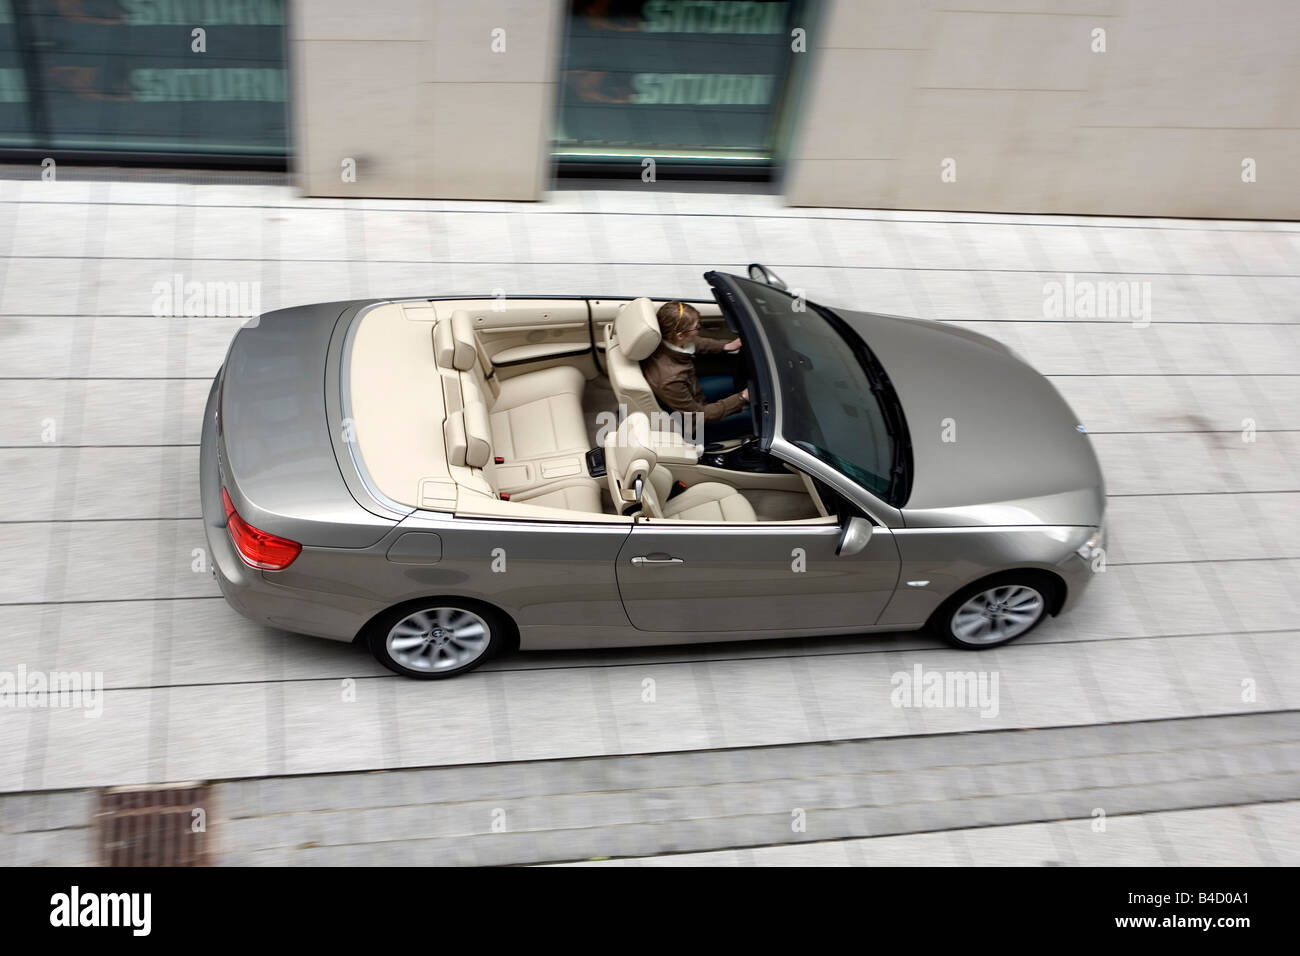 BMW 335i Convertible, l'année de modèle 2007, d'argent, la conduite, la diagonale du dessus, vue de côté, la ville, open top Banque D'Images